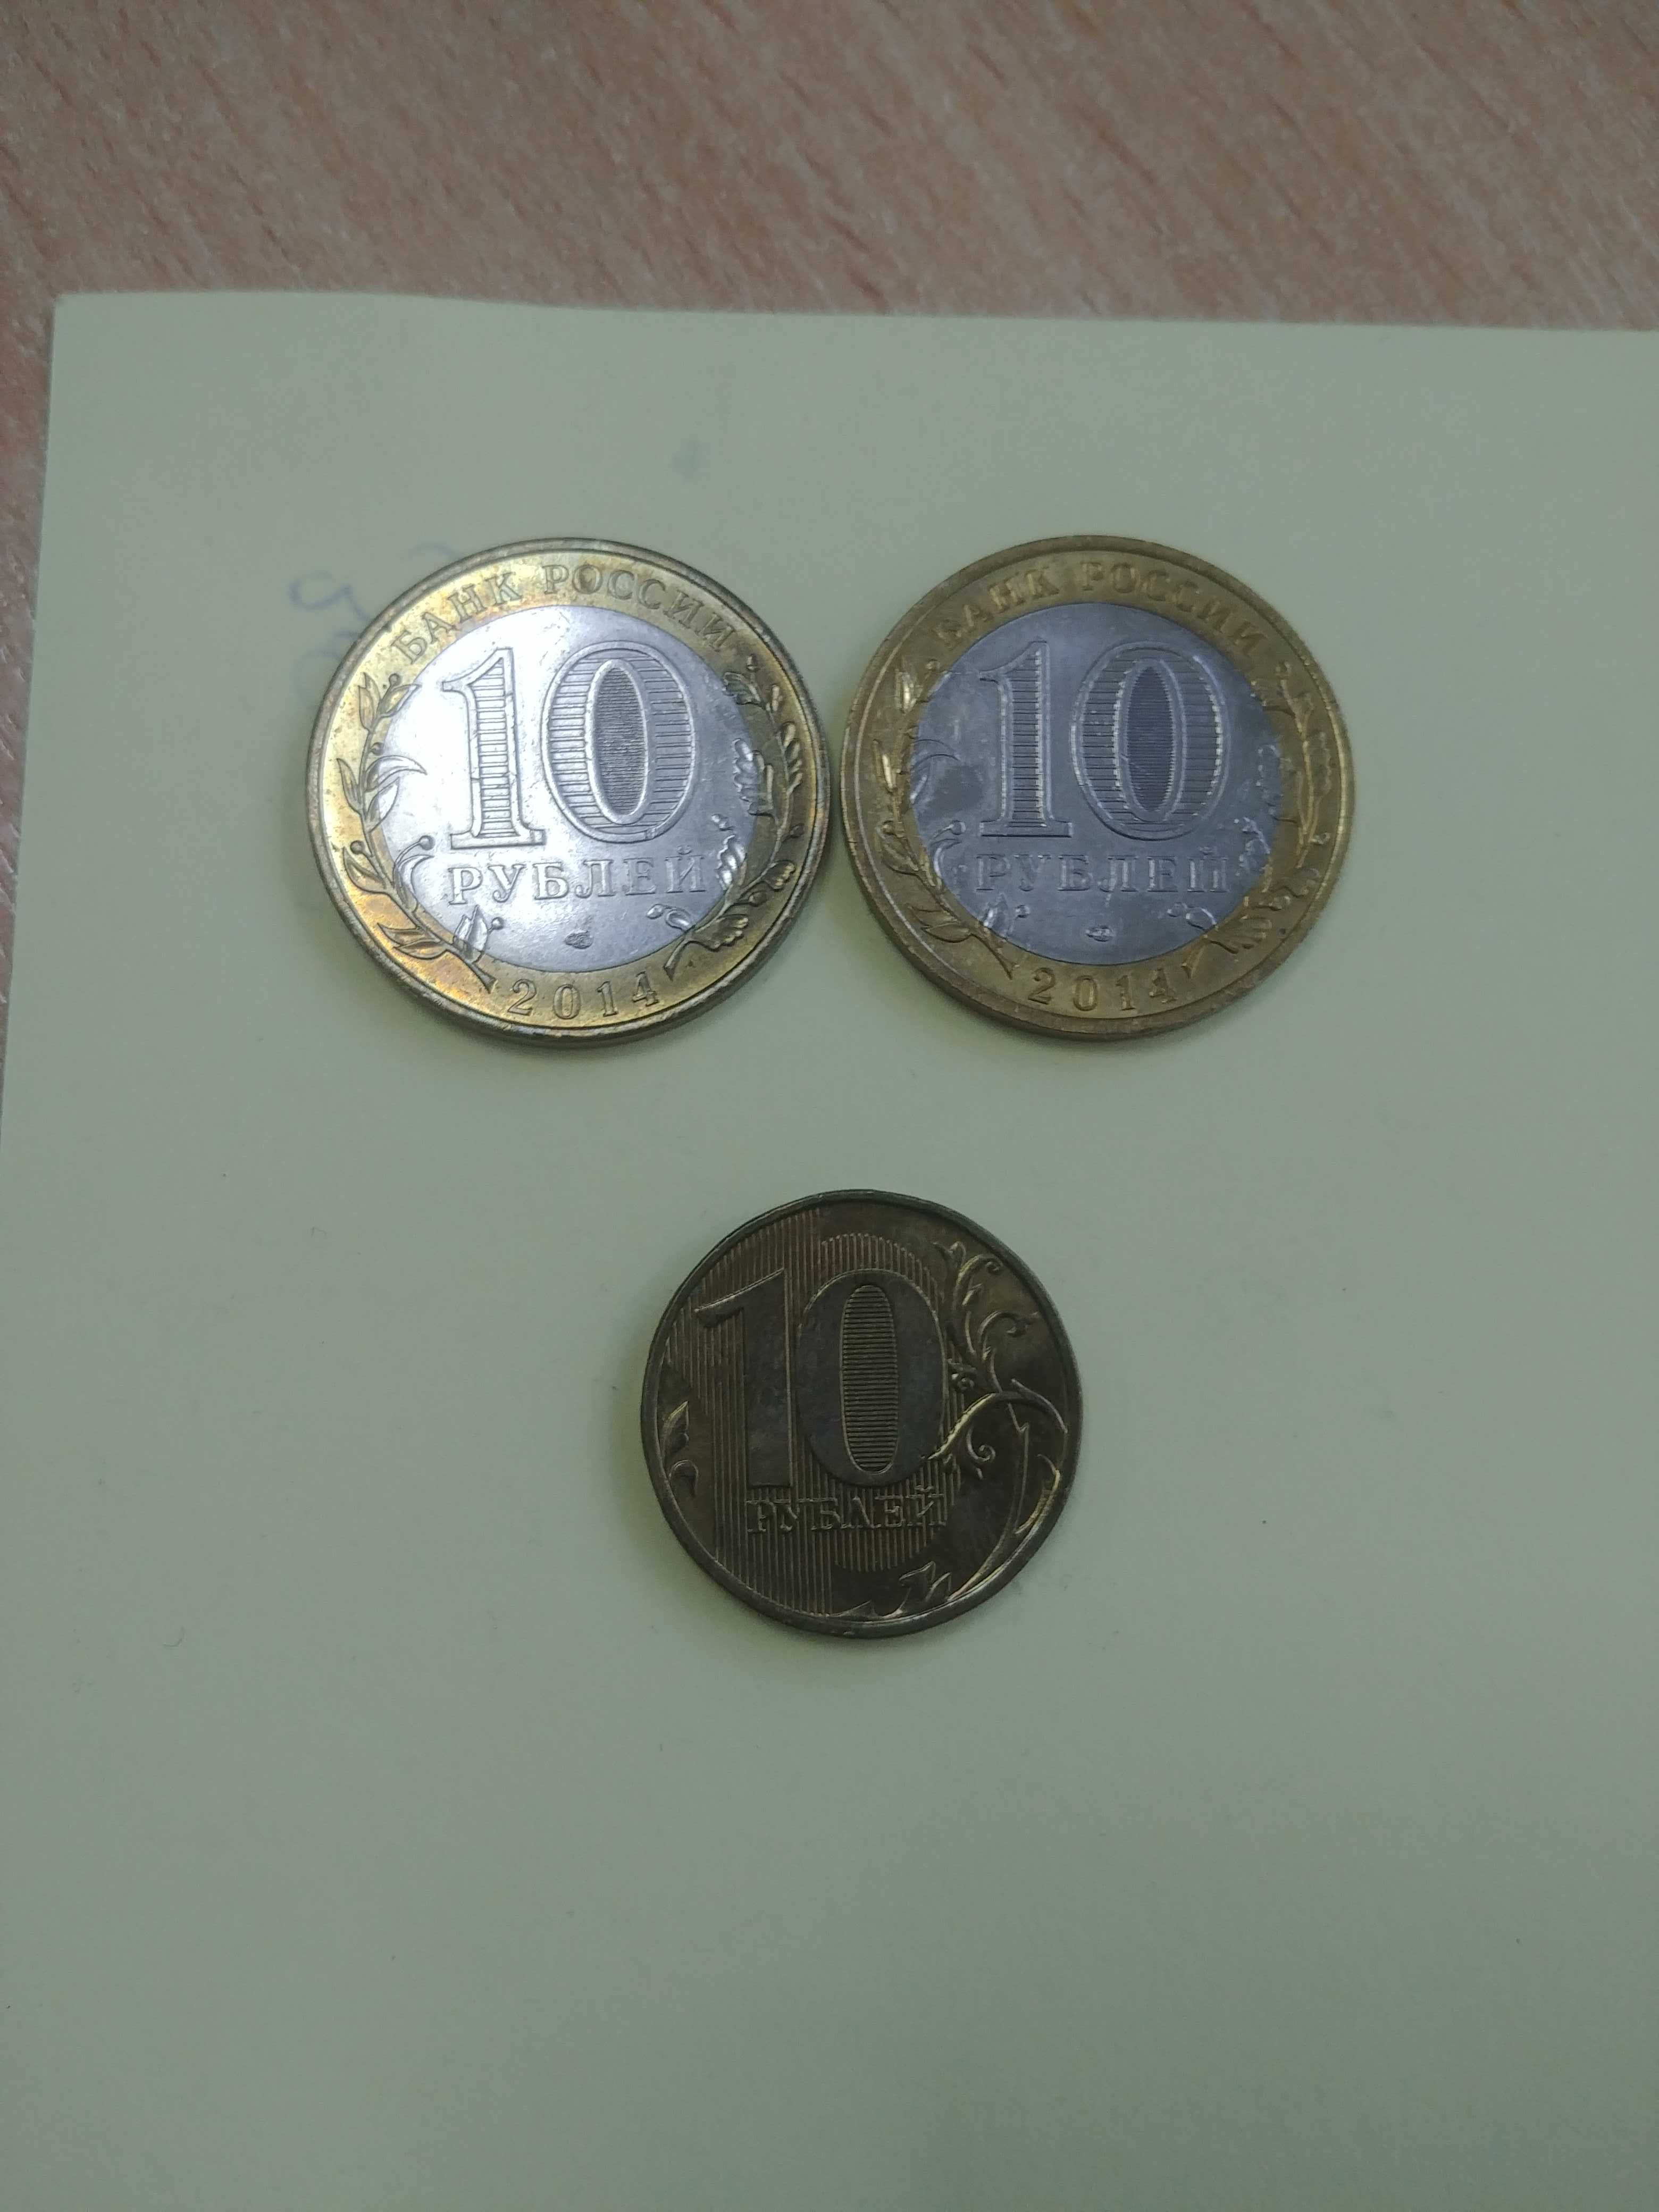 10 рублей российских 2013 и 2014 года